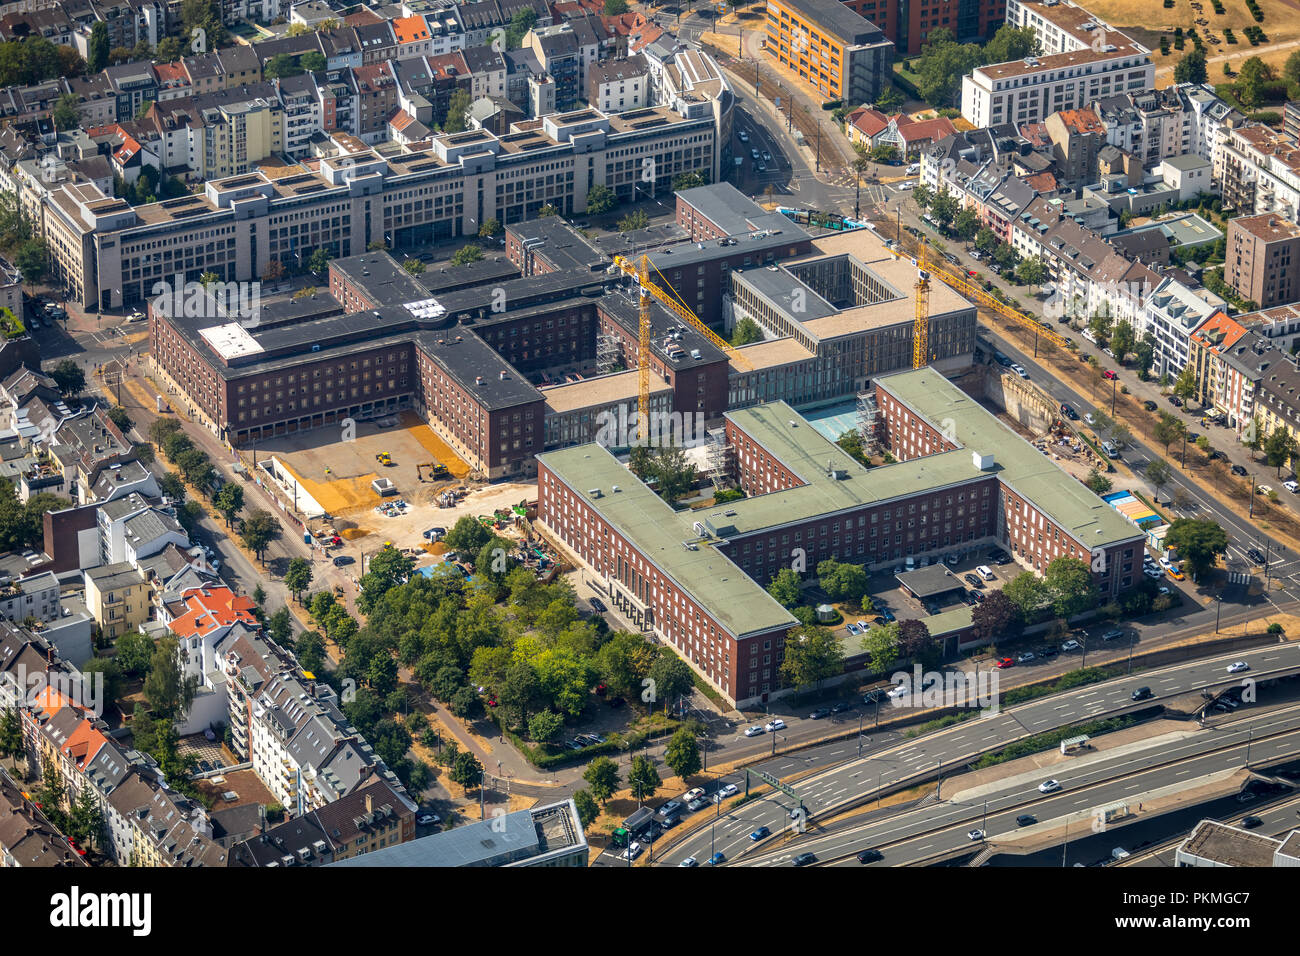 Luftaufnahme, Erweiterung der aufgeführten Polizeipräsidium in der Innenstadt von Düsseldorf, Neubau Dichtung Düsseldorf Polizei Stockfoto